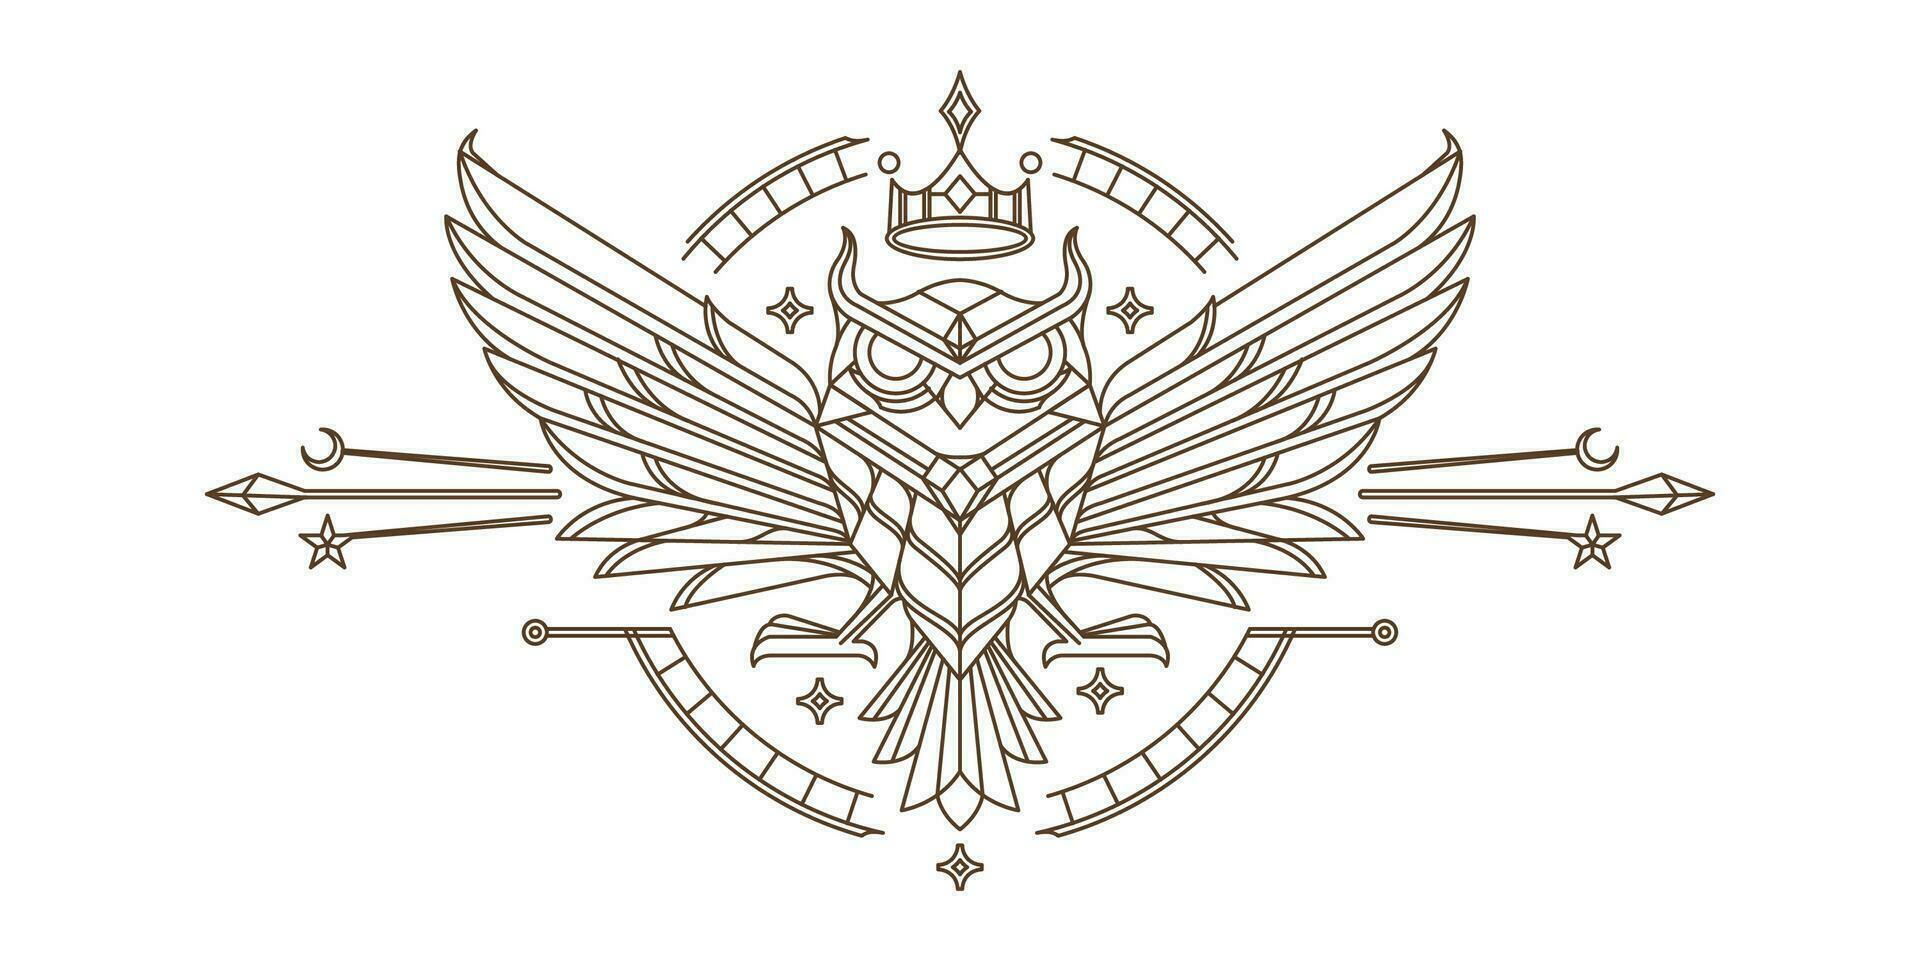 sagrado coruja parede arte linha Projeto. vintage desenhando do rei coruja geométrico Projeto com detalhado asas vetor místico ilustração.